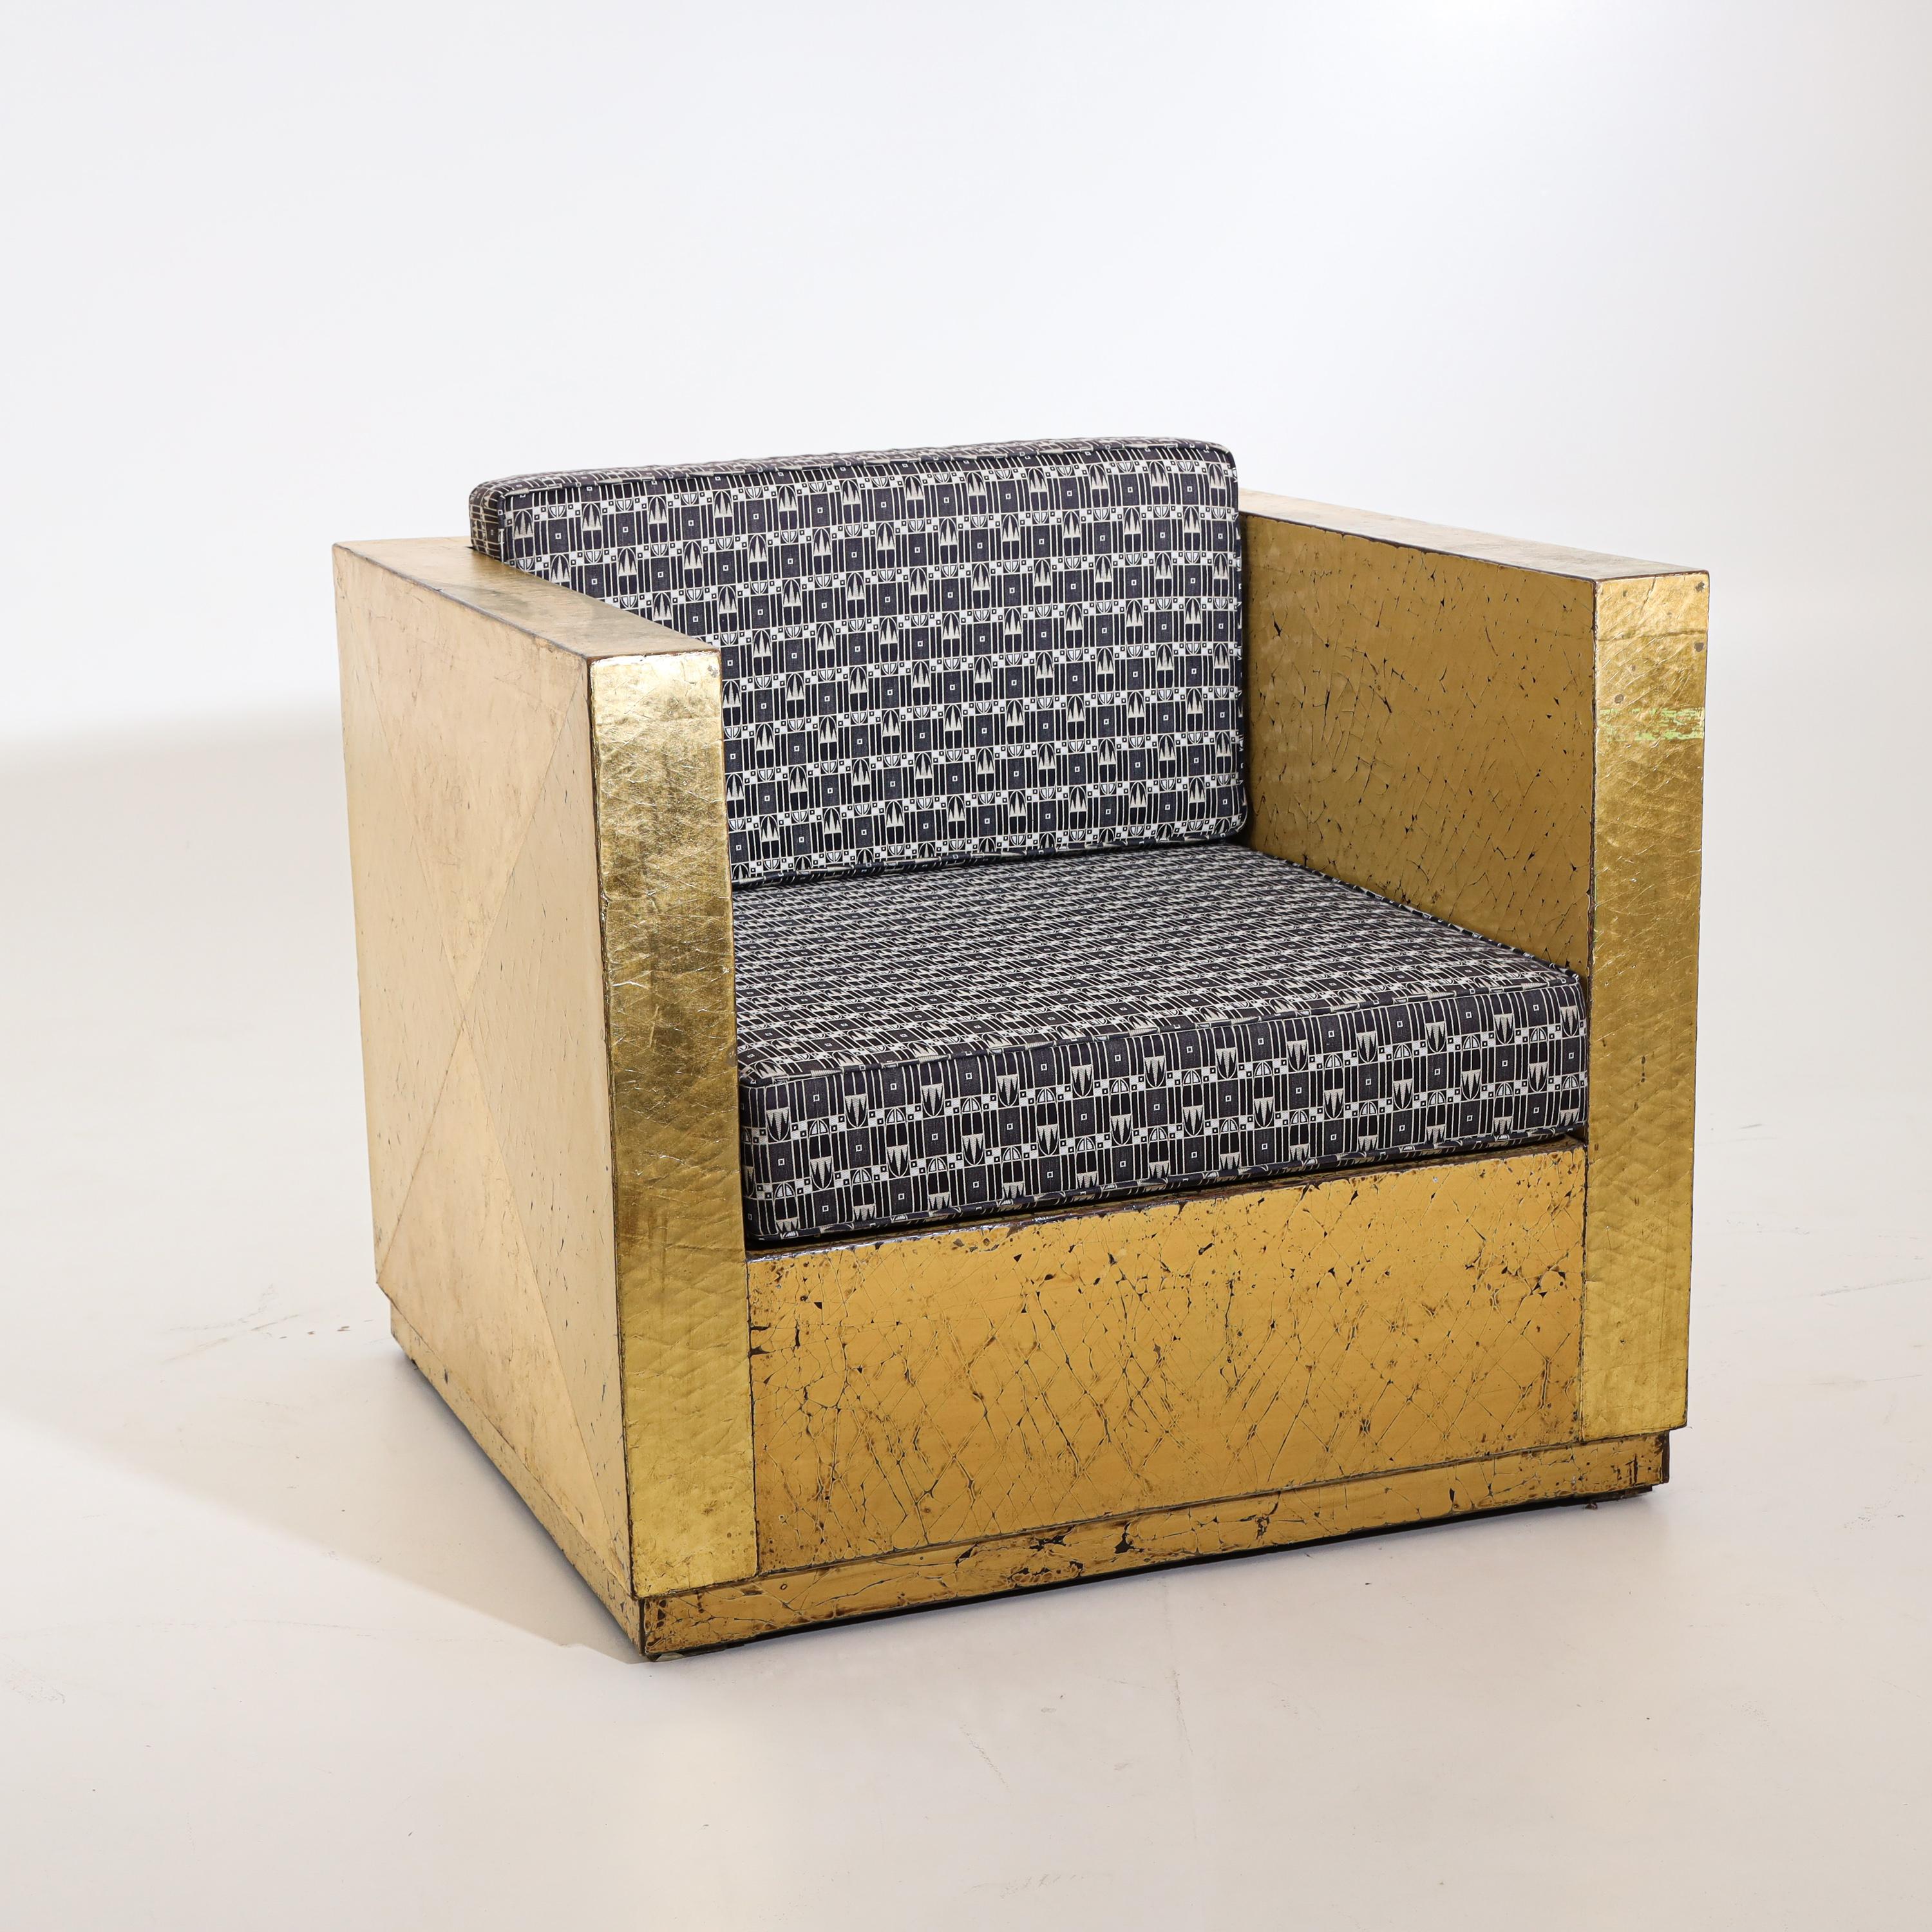 Paar Sessel mit goldpatiniertem Gestell, geraden Armlehnen und Sitzkissen im Art déco-Stil. Sehr schöne Patina und geometrisch aufgebautes Design an den Seiten, stellenweise abgenutzt.
  